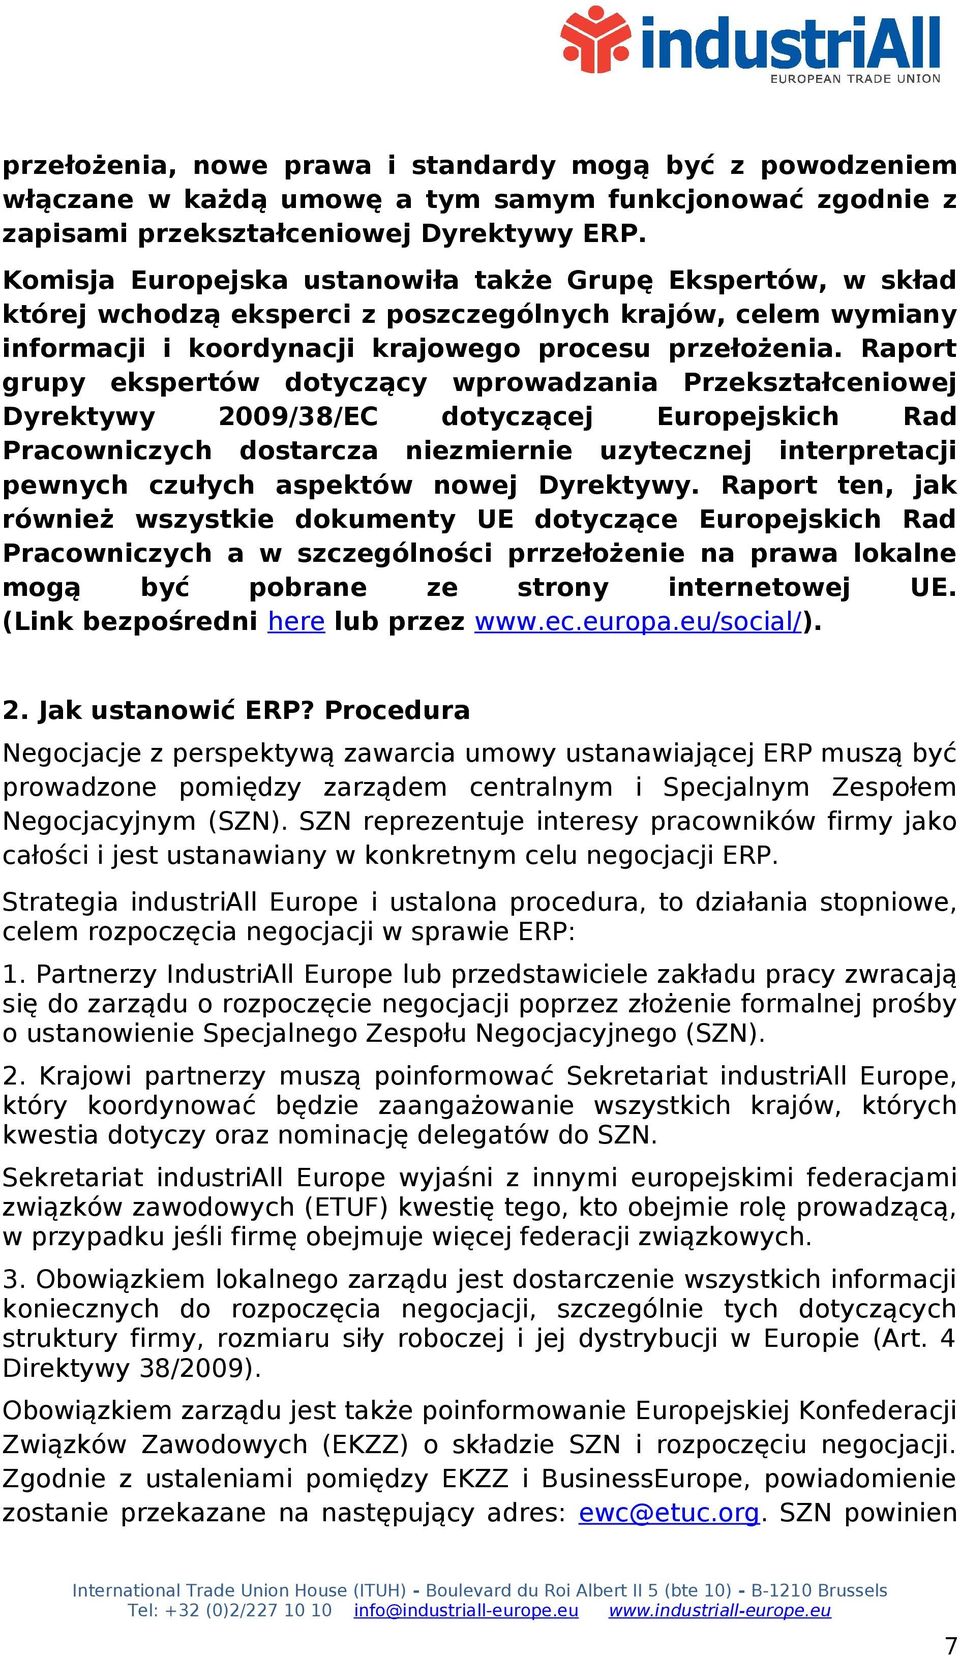 Raport grupy ekspertów dotyczący wprowadzania Przekształceniowej Dyrektywy 2009/38/EC dotyczącej Europejskich Rad Pracowniczych dostarcza niezmiernie uzytecznej interpretacji pewnych czułych aspektów